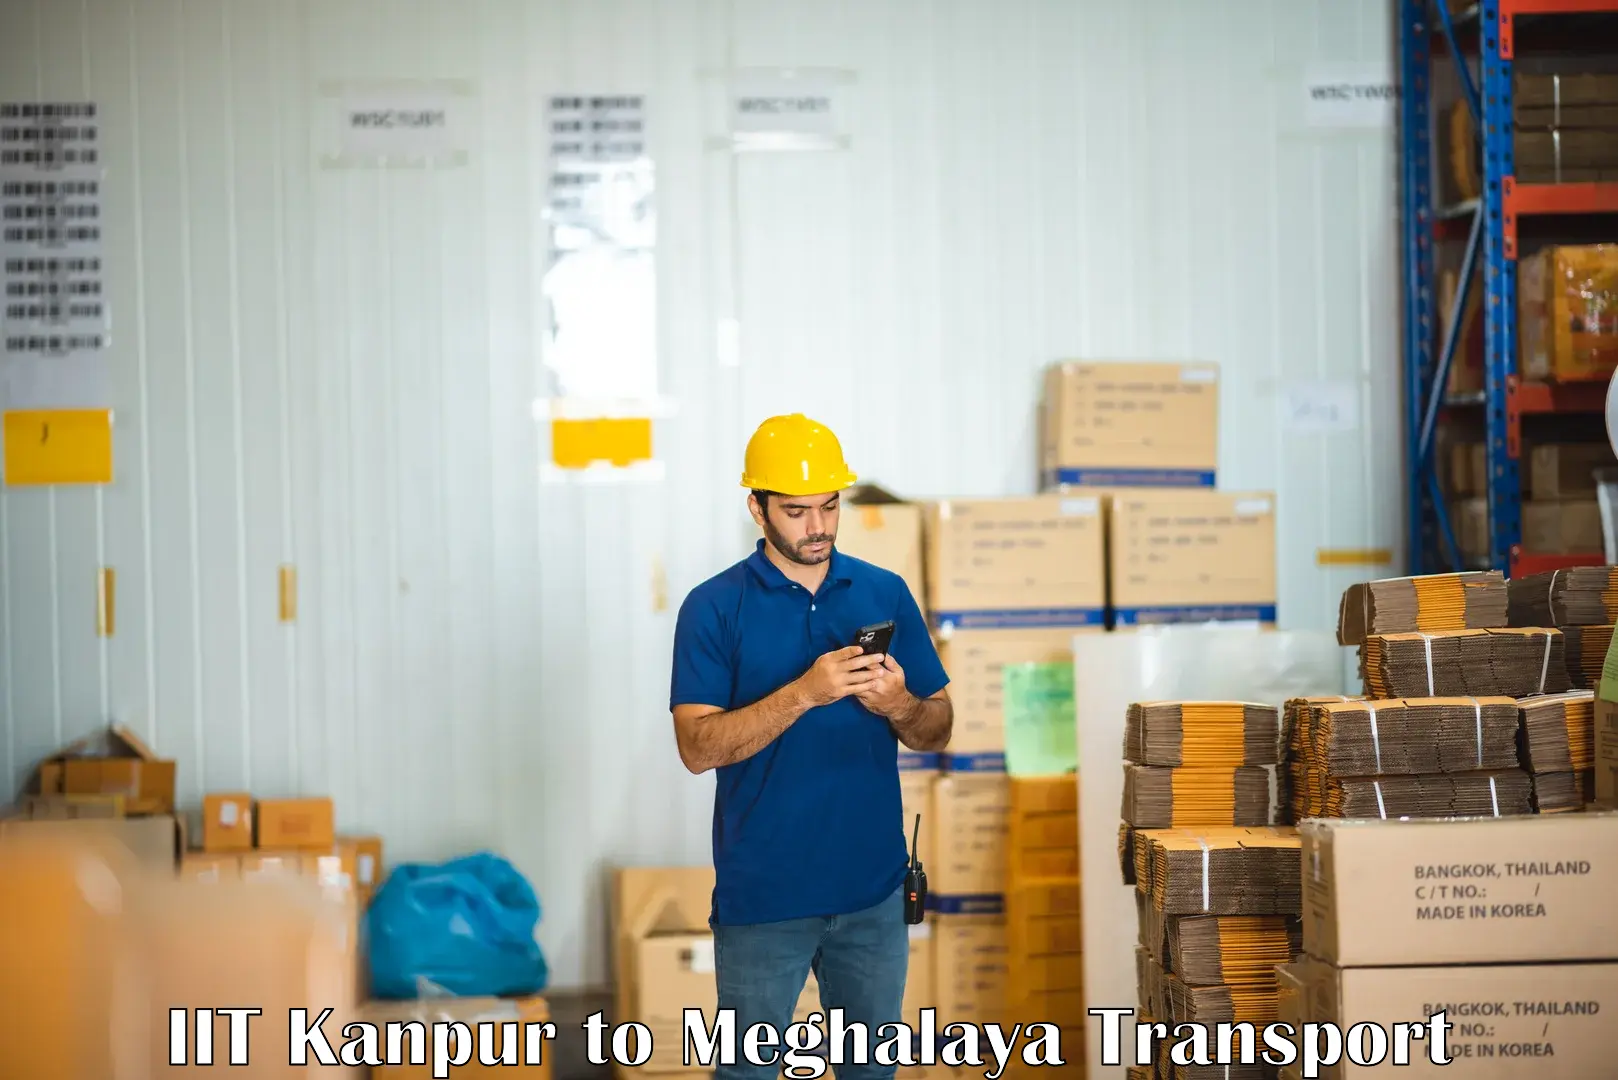 Furniture transport service IIT Kanpur to Meghalaya